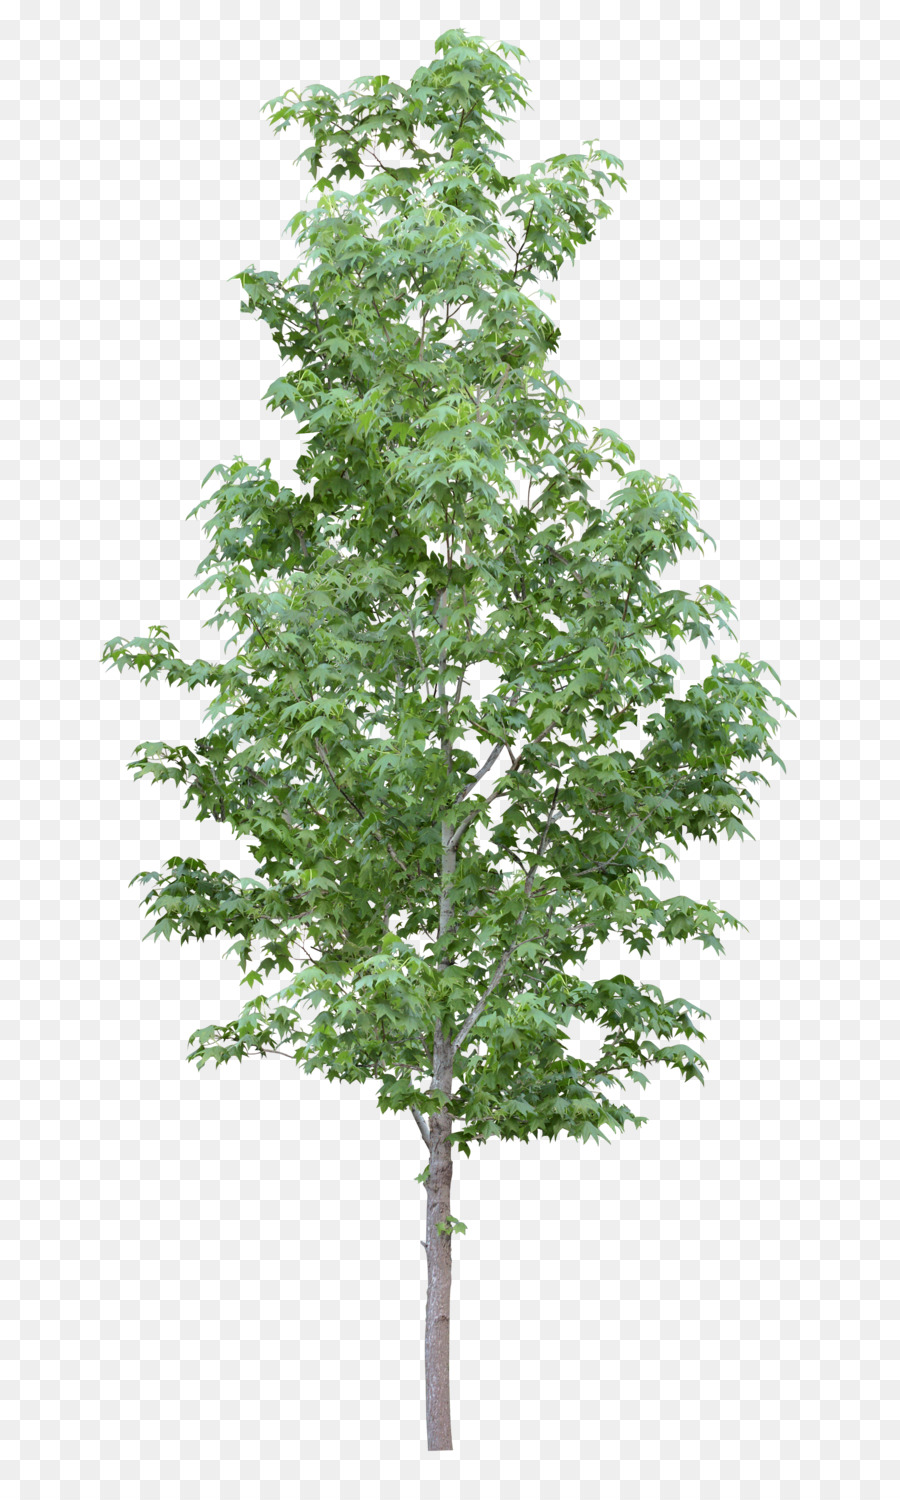 Amelanchier arborea Zweig Baum, Amelanchier lamarckii Strauch - Baum